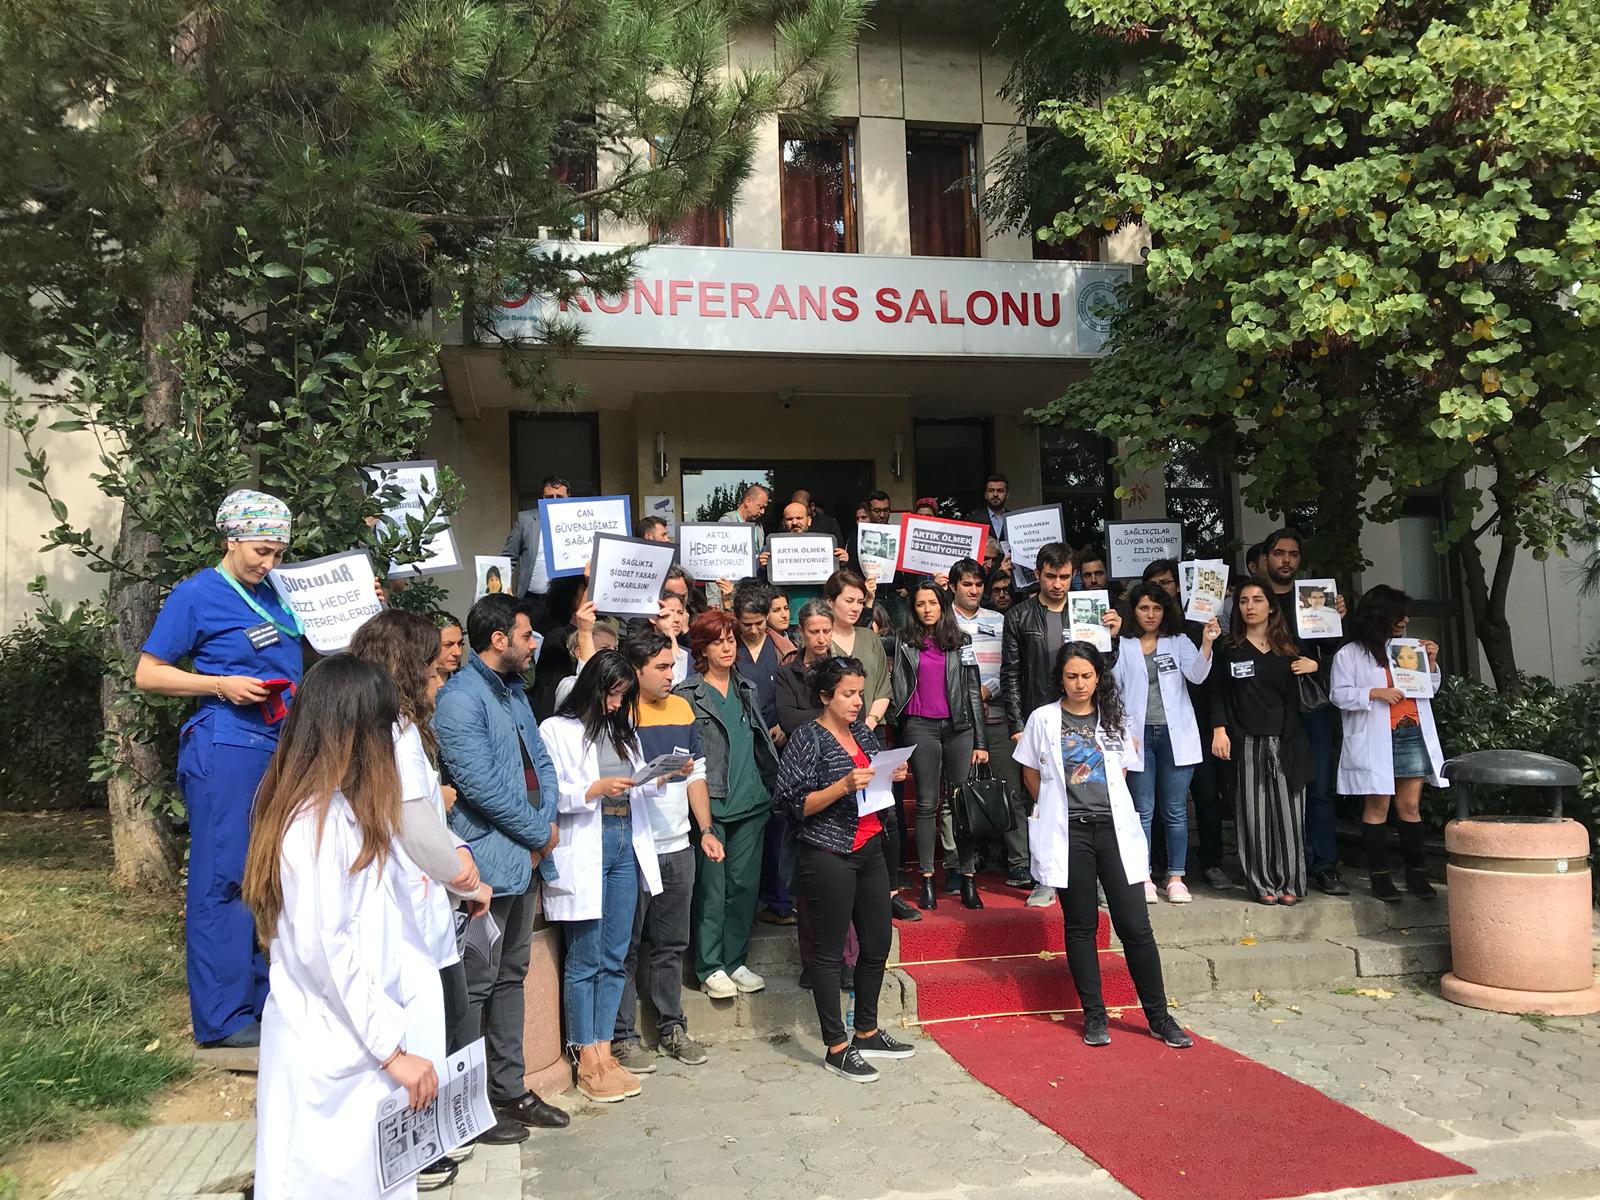 Dr. Fikret Hacıosman İçin İstanbul'da Hastane Önlerinde Anma Yapıldı